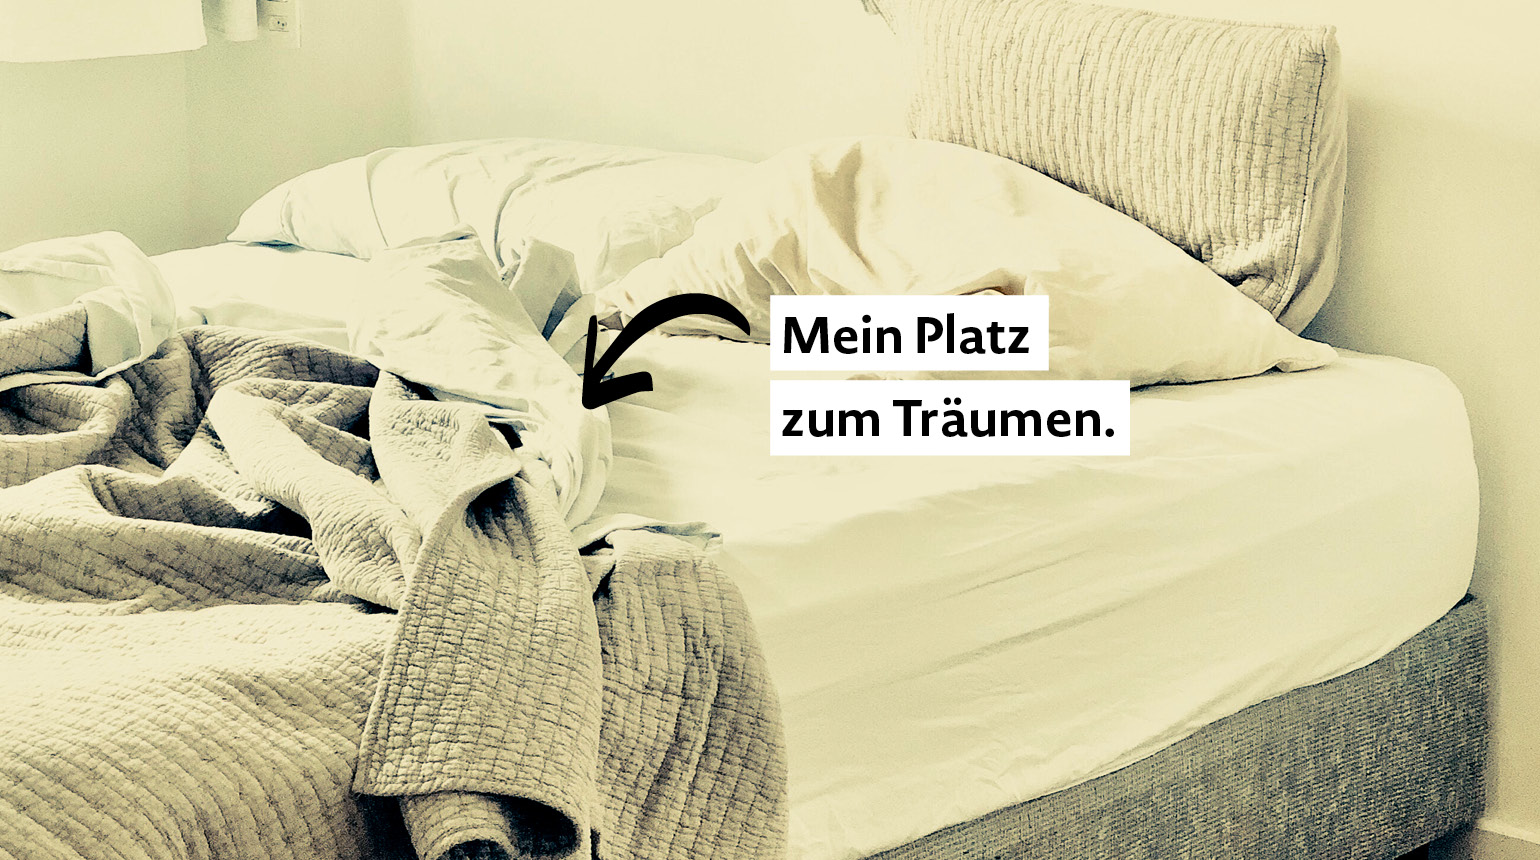 Bild: ein Bett mit aufgeschlagener Decke. Text: „Mein Platz zum Träumen.“ 